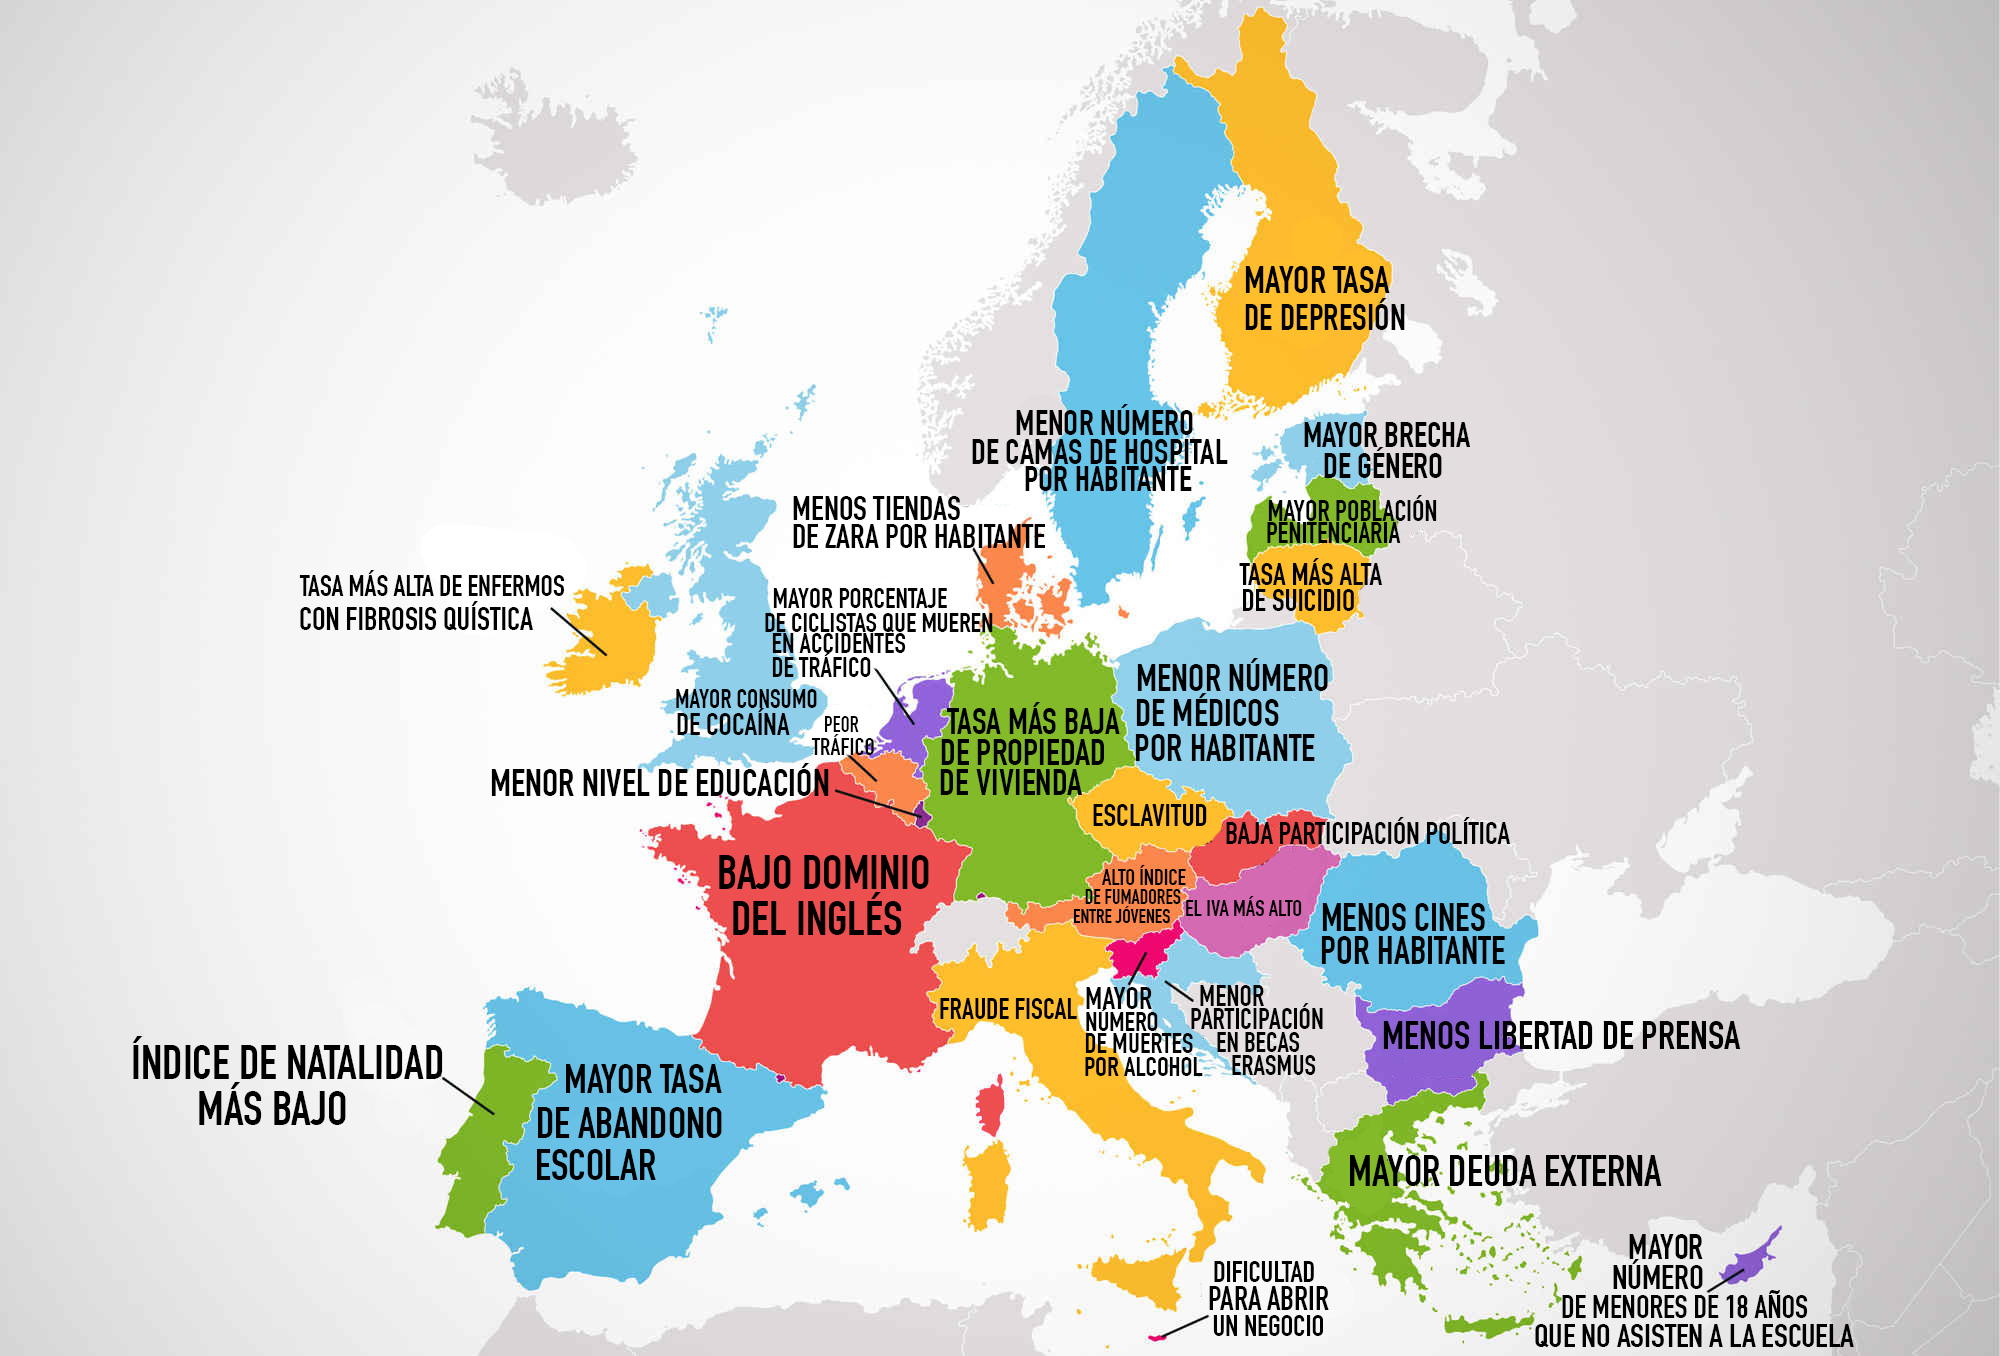 Mapa revela qué es lo peor de cada país de Europa - RT